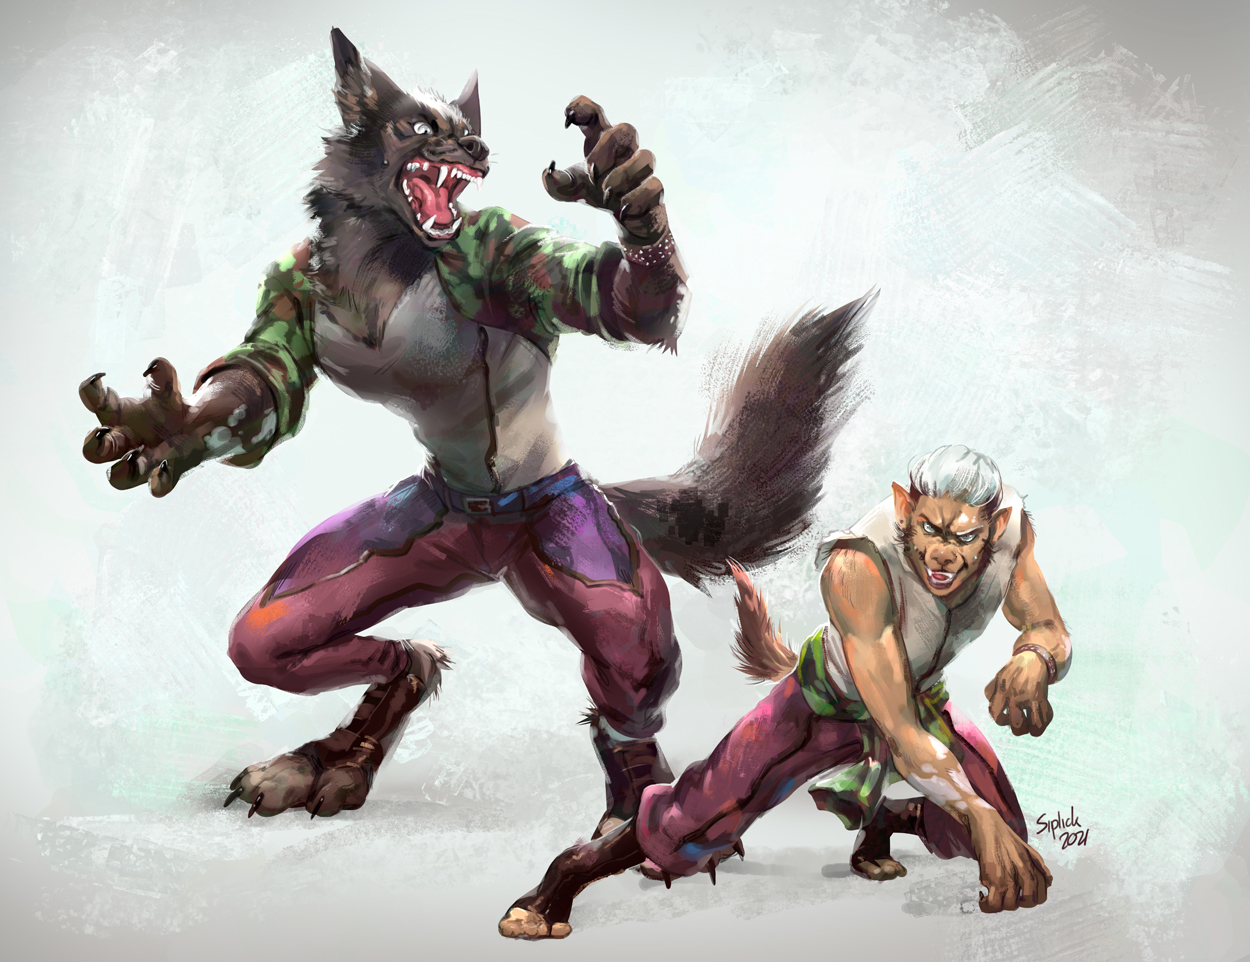 Werelion vs werewolf